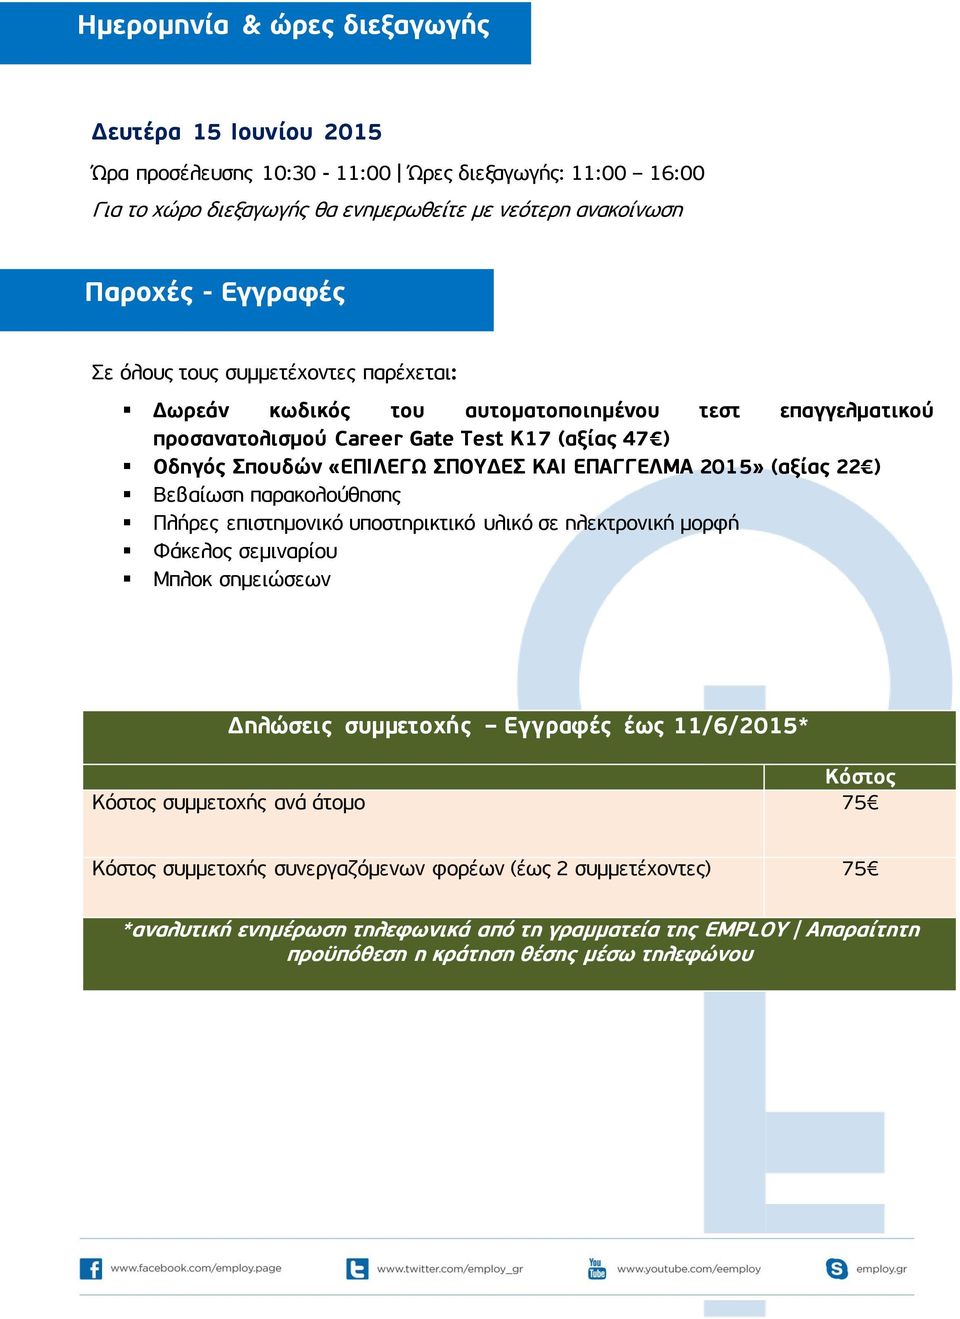 (αξίας 22 ) Βεβαίωση παρακολούθησης Πλήρες επιστημονικό υποστηρικτικό υλικό σε ηλεκτρονική μορφή Φάκελος σεμιναρίου Μπλοκ σημειώσεων Δηλώσεις συμμετοχής Εγγραφές έως 11/6/2015* Κόστος Κόστος